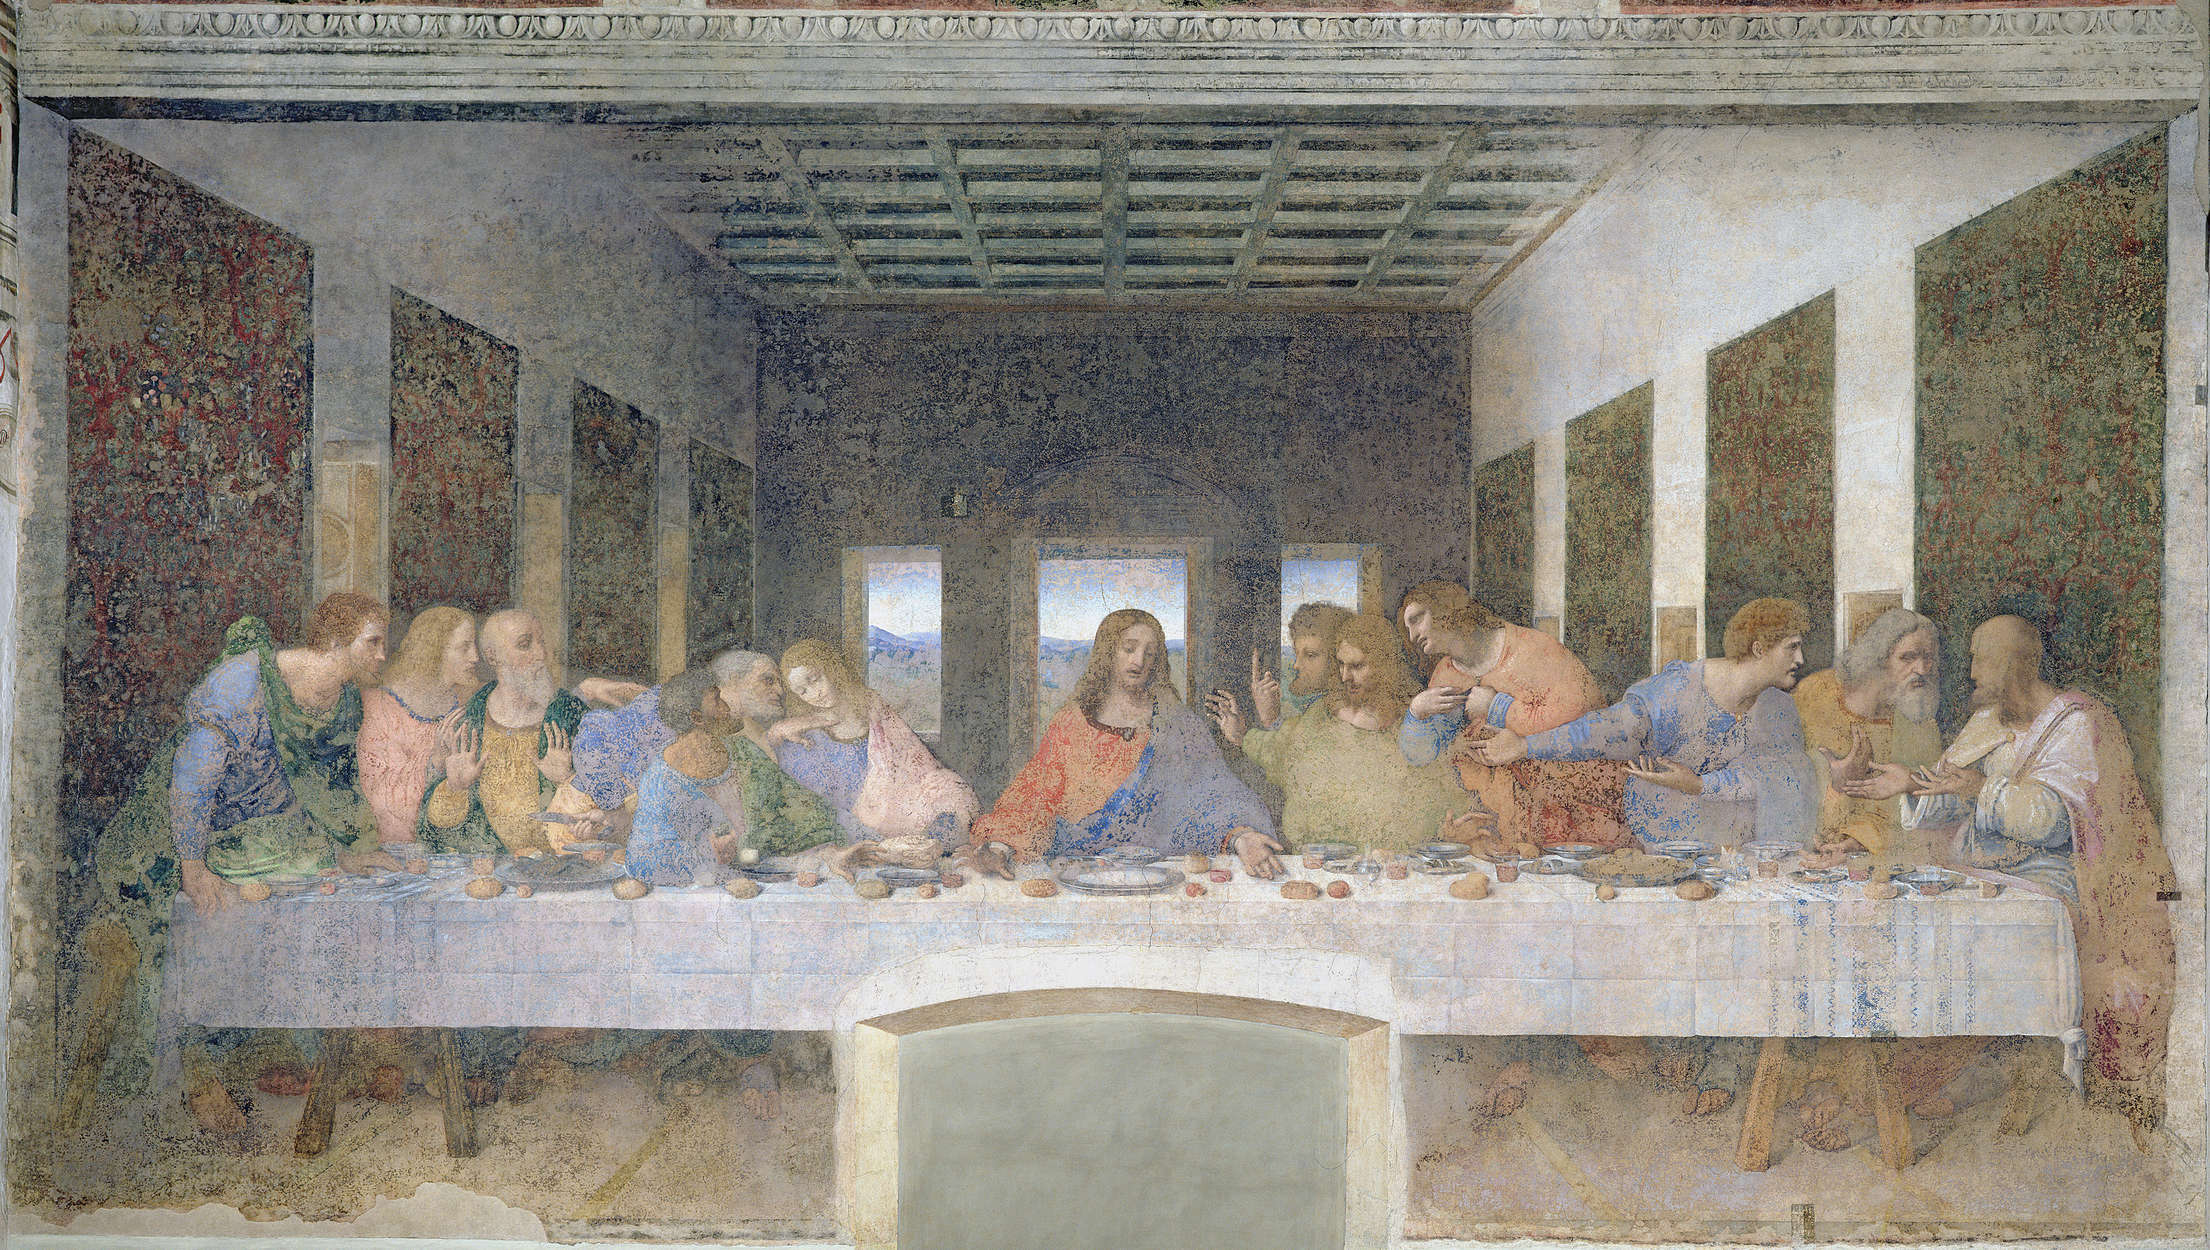             Mural "La última cena" de Leonardo da Vinci
        